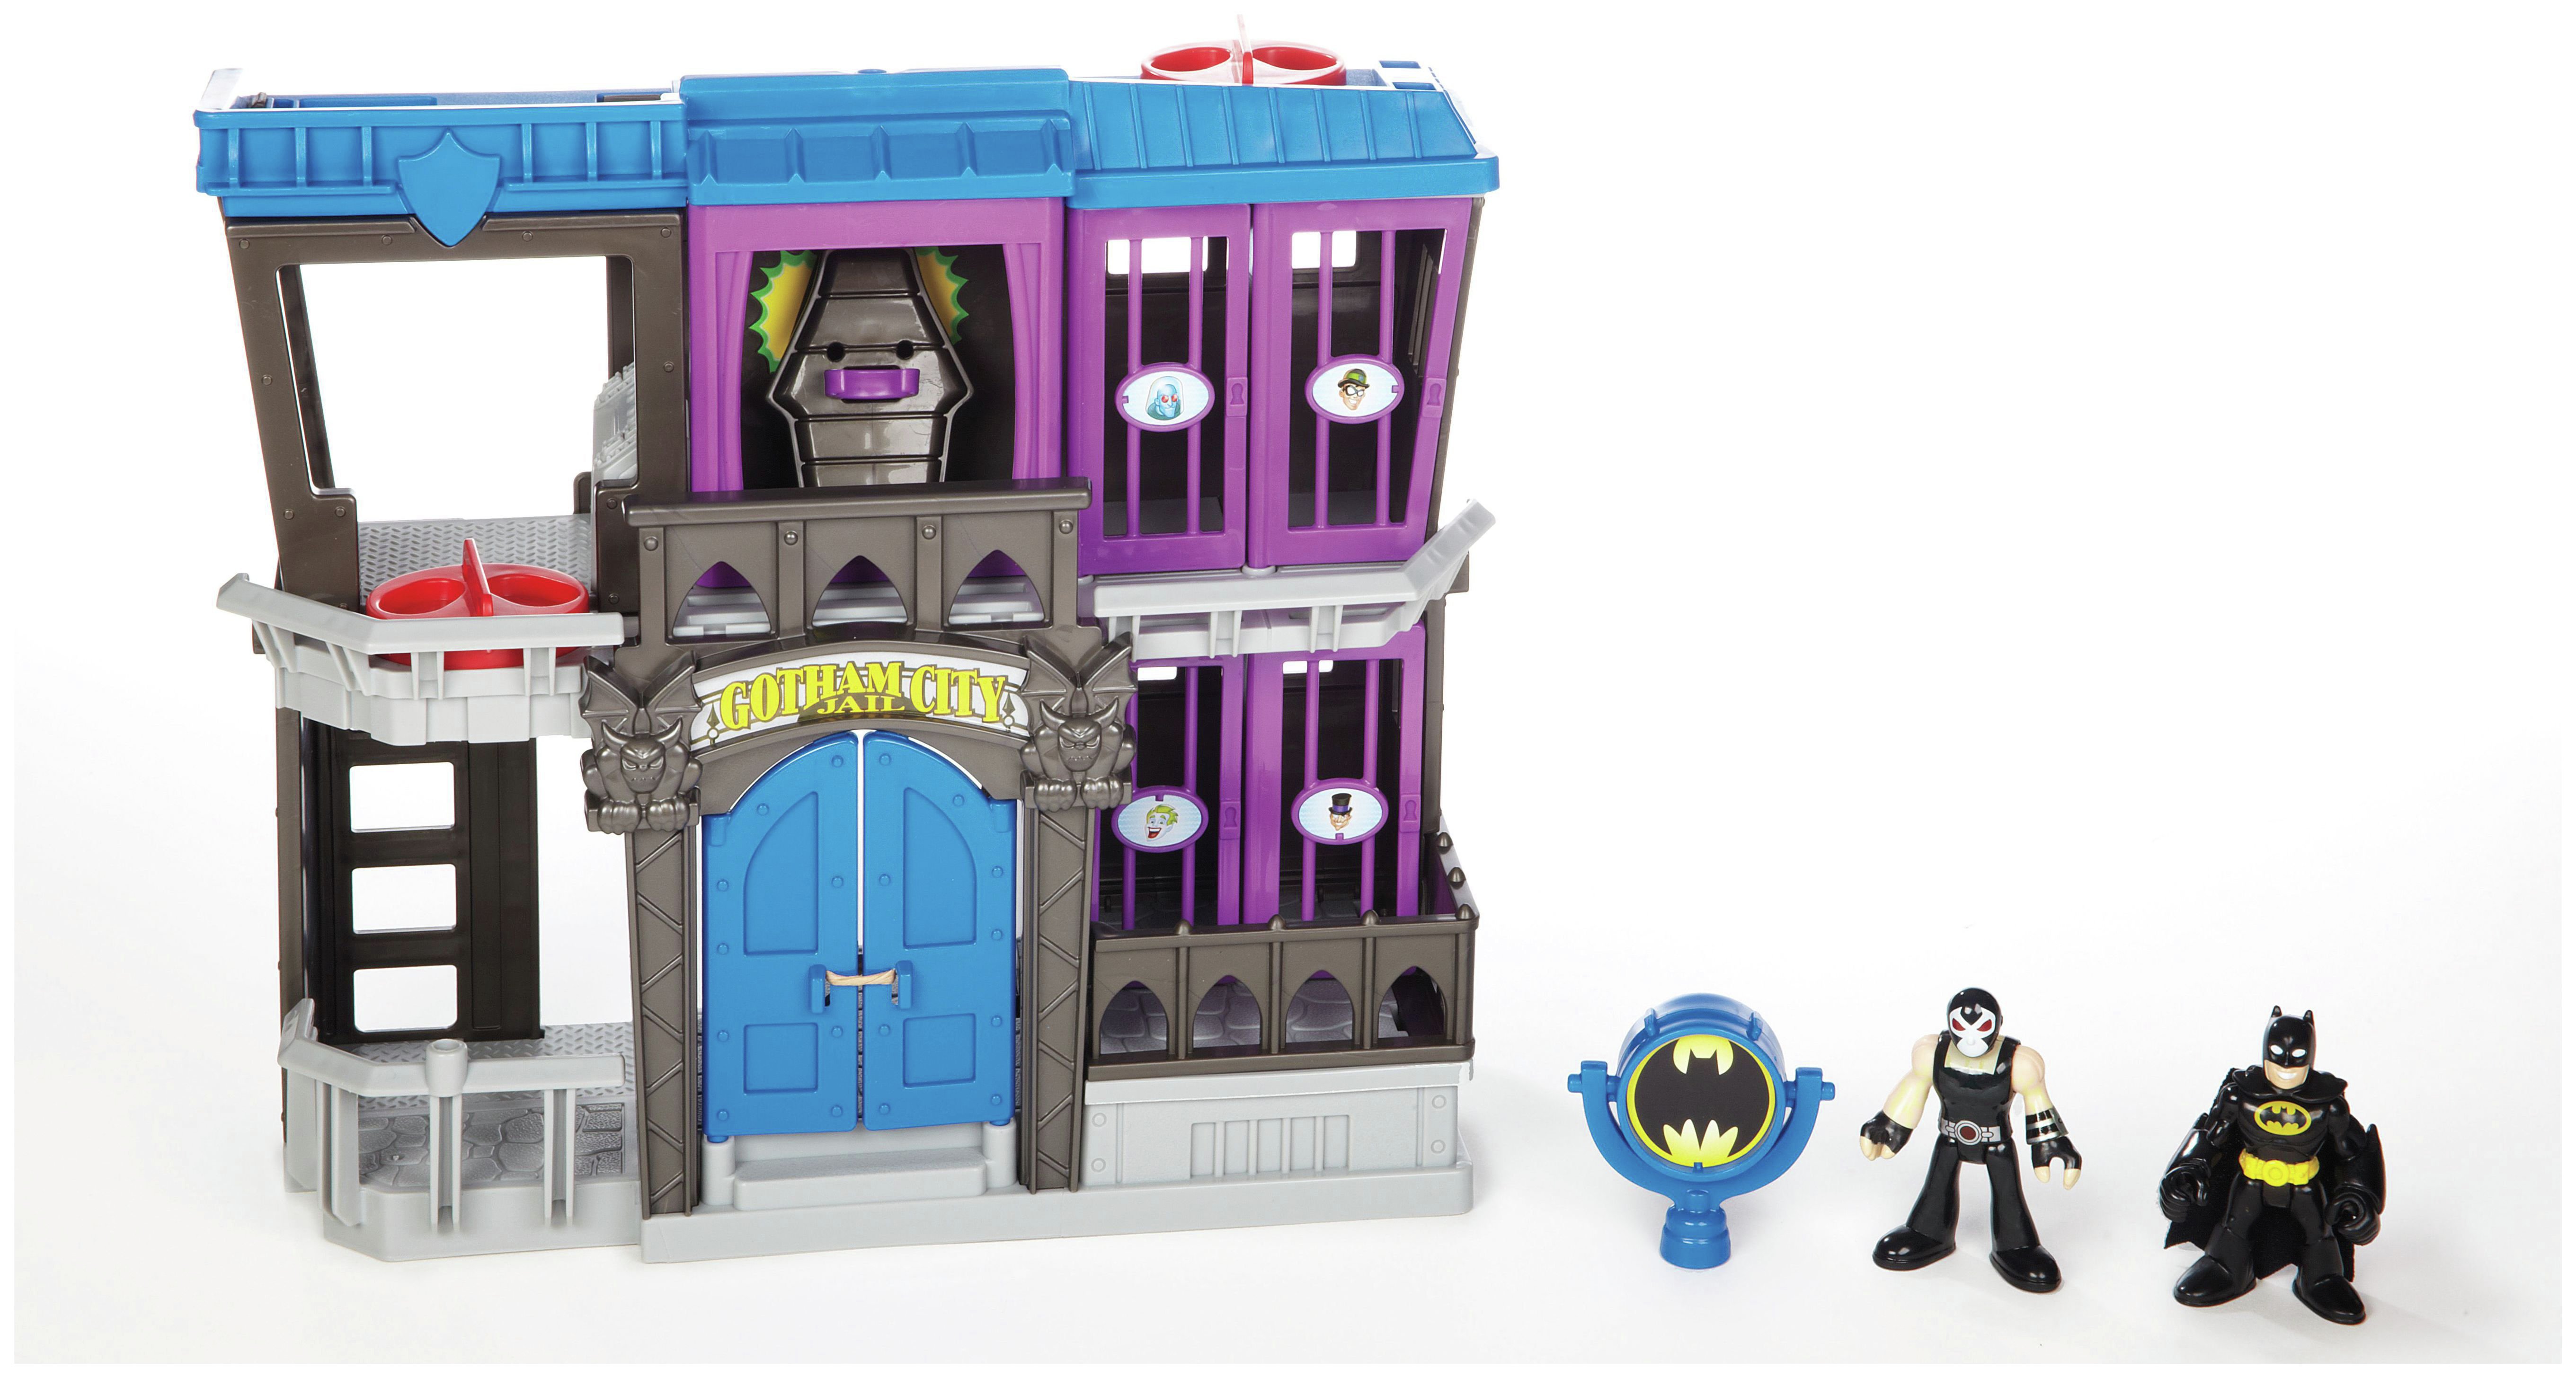 Imaginext DC Super Friends Gotham City Jail with Batman 